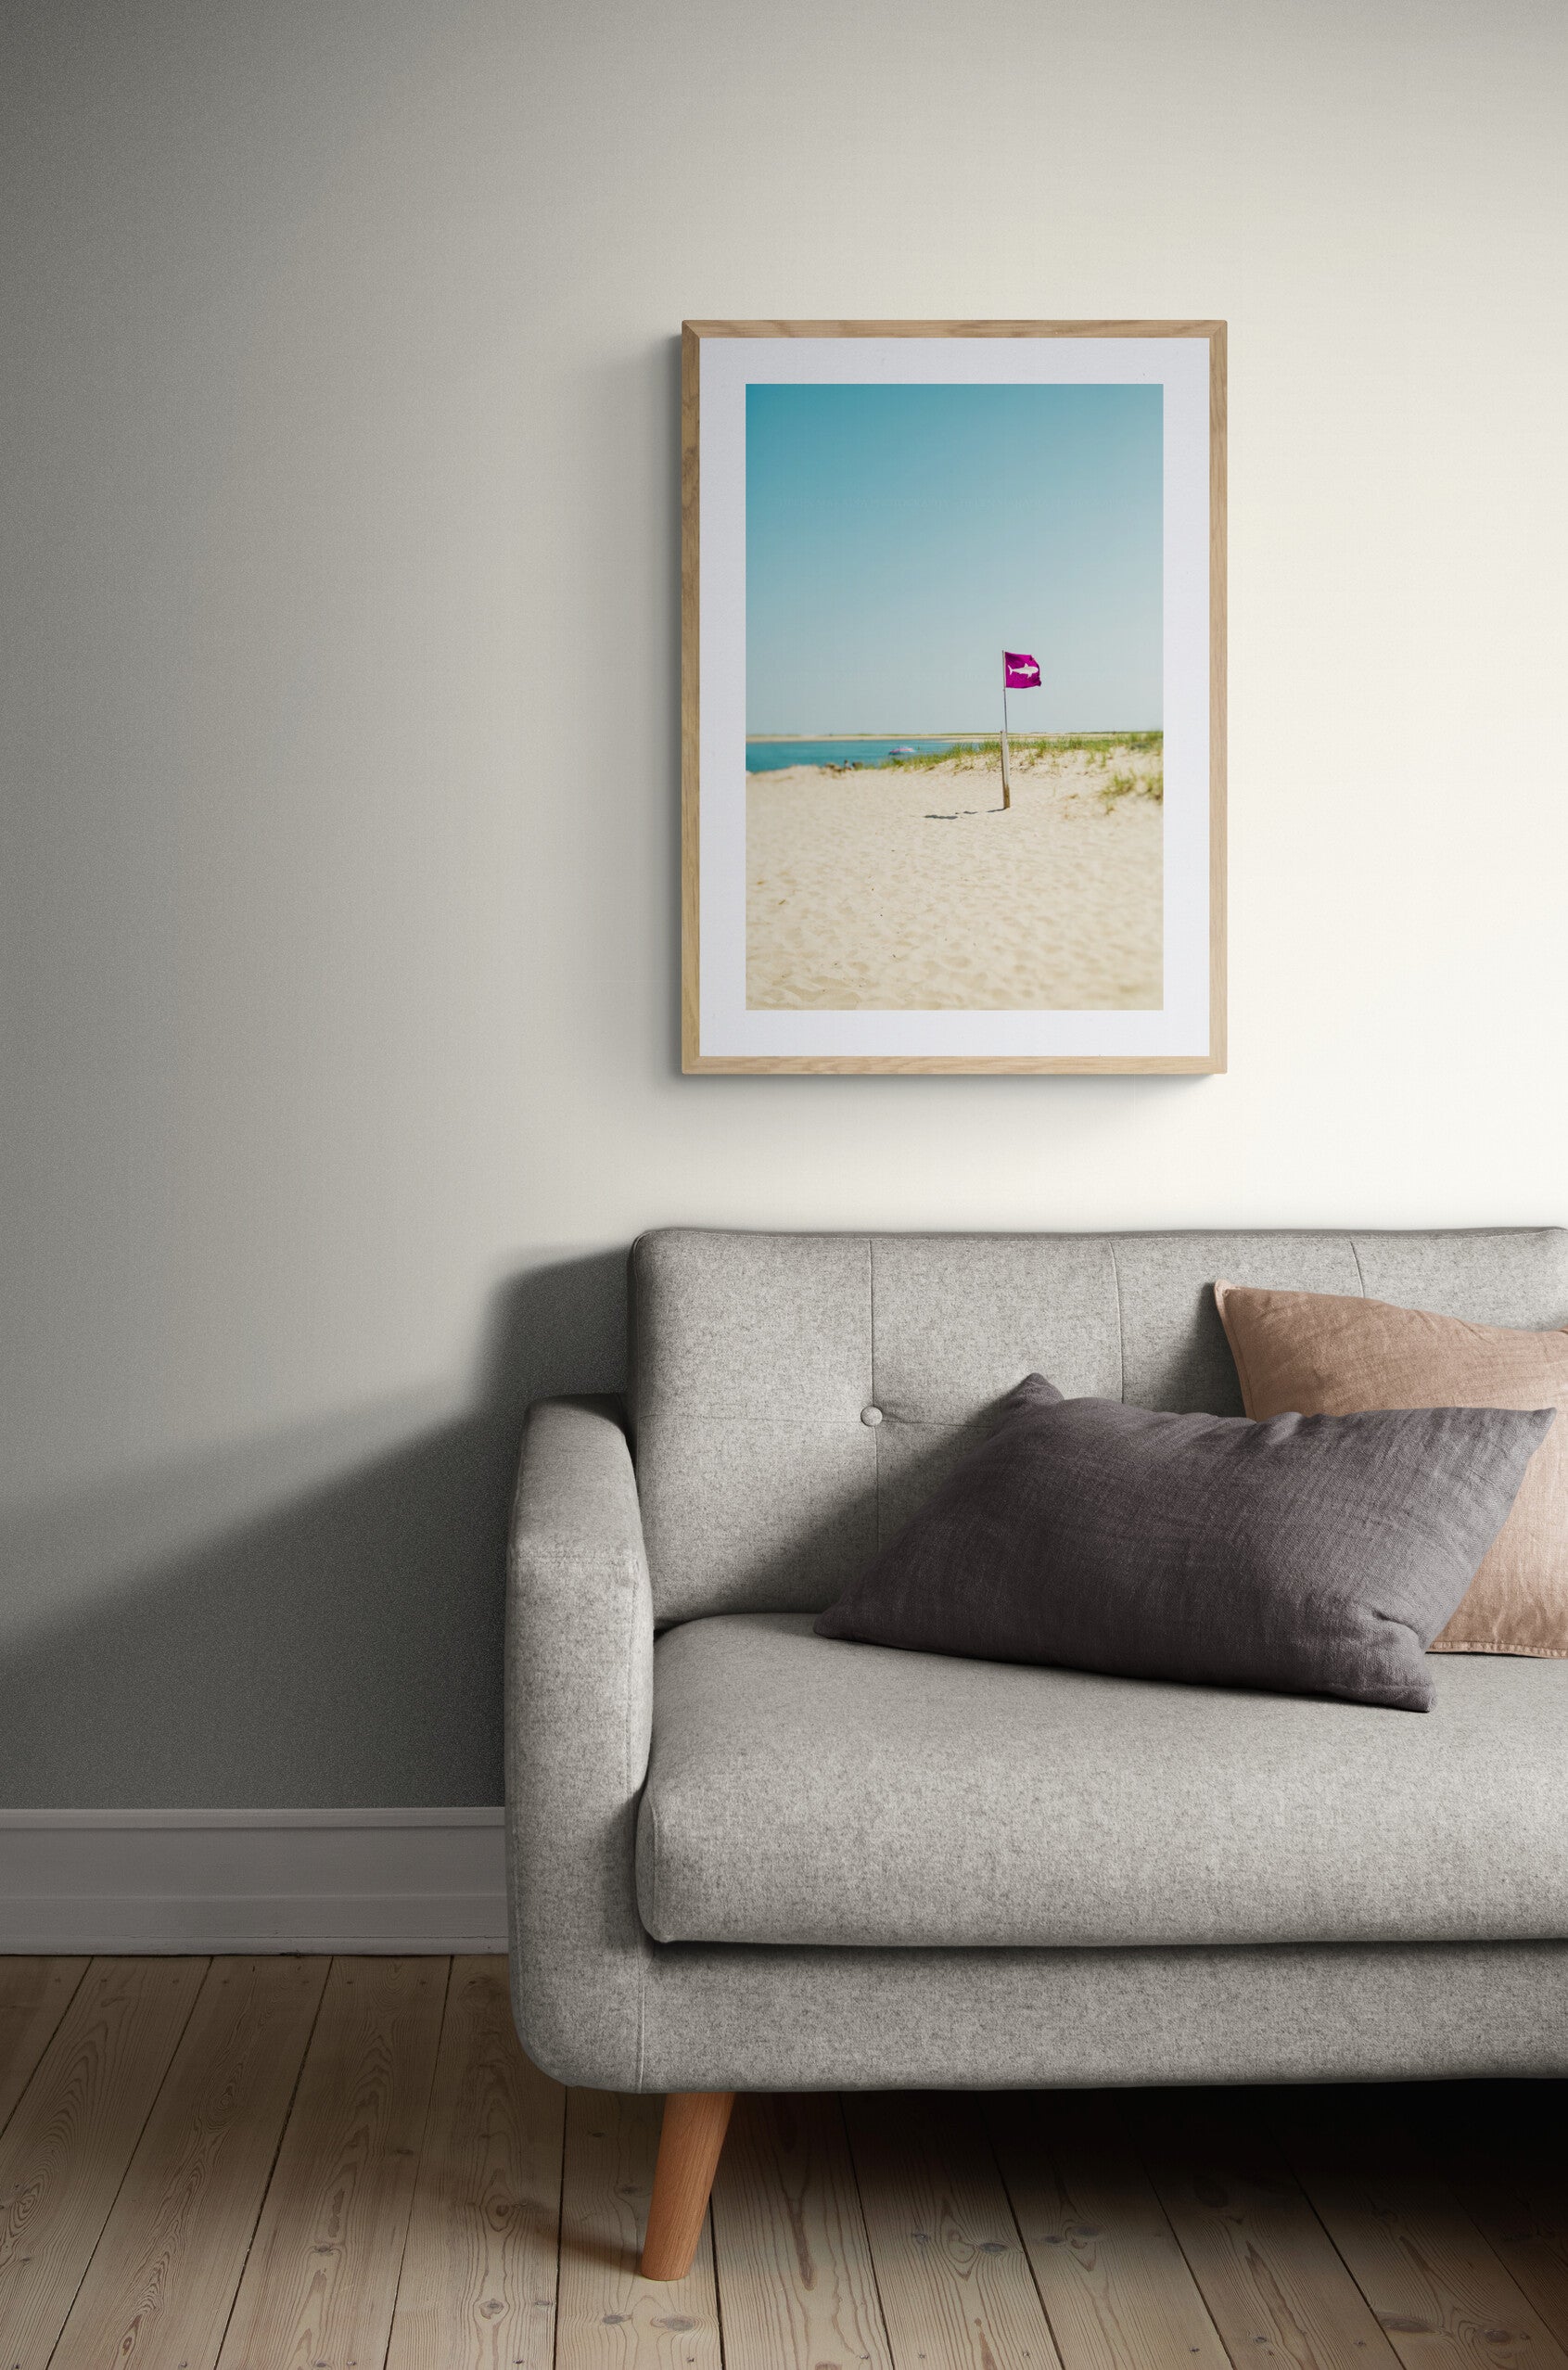 Shark flag photograph on cape cod beach as wall art in a living room